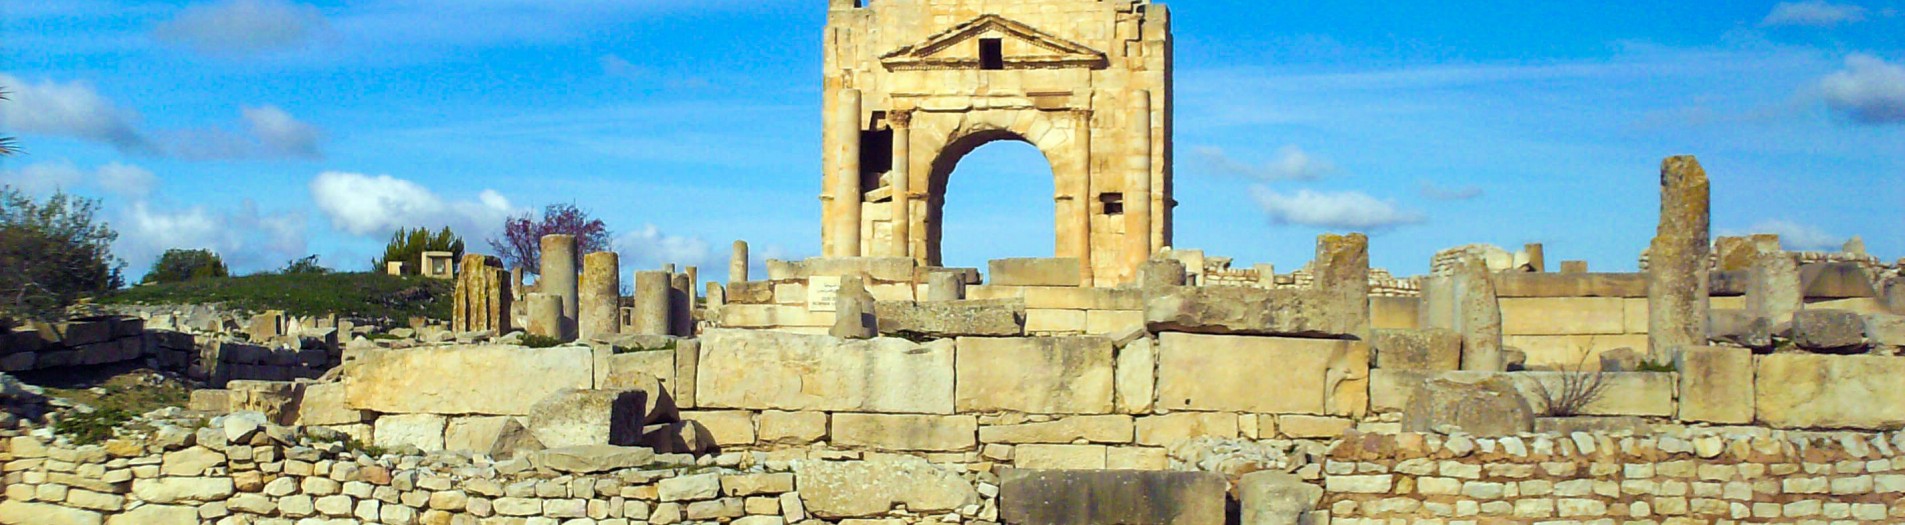 Le site archéologique de Makthar الموقع الاثري بمكثر